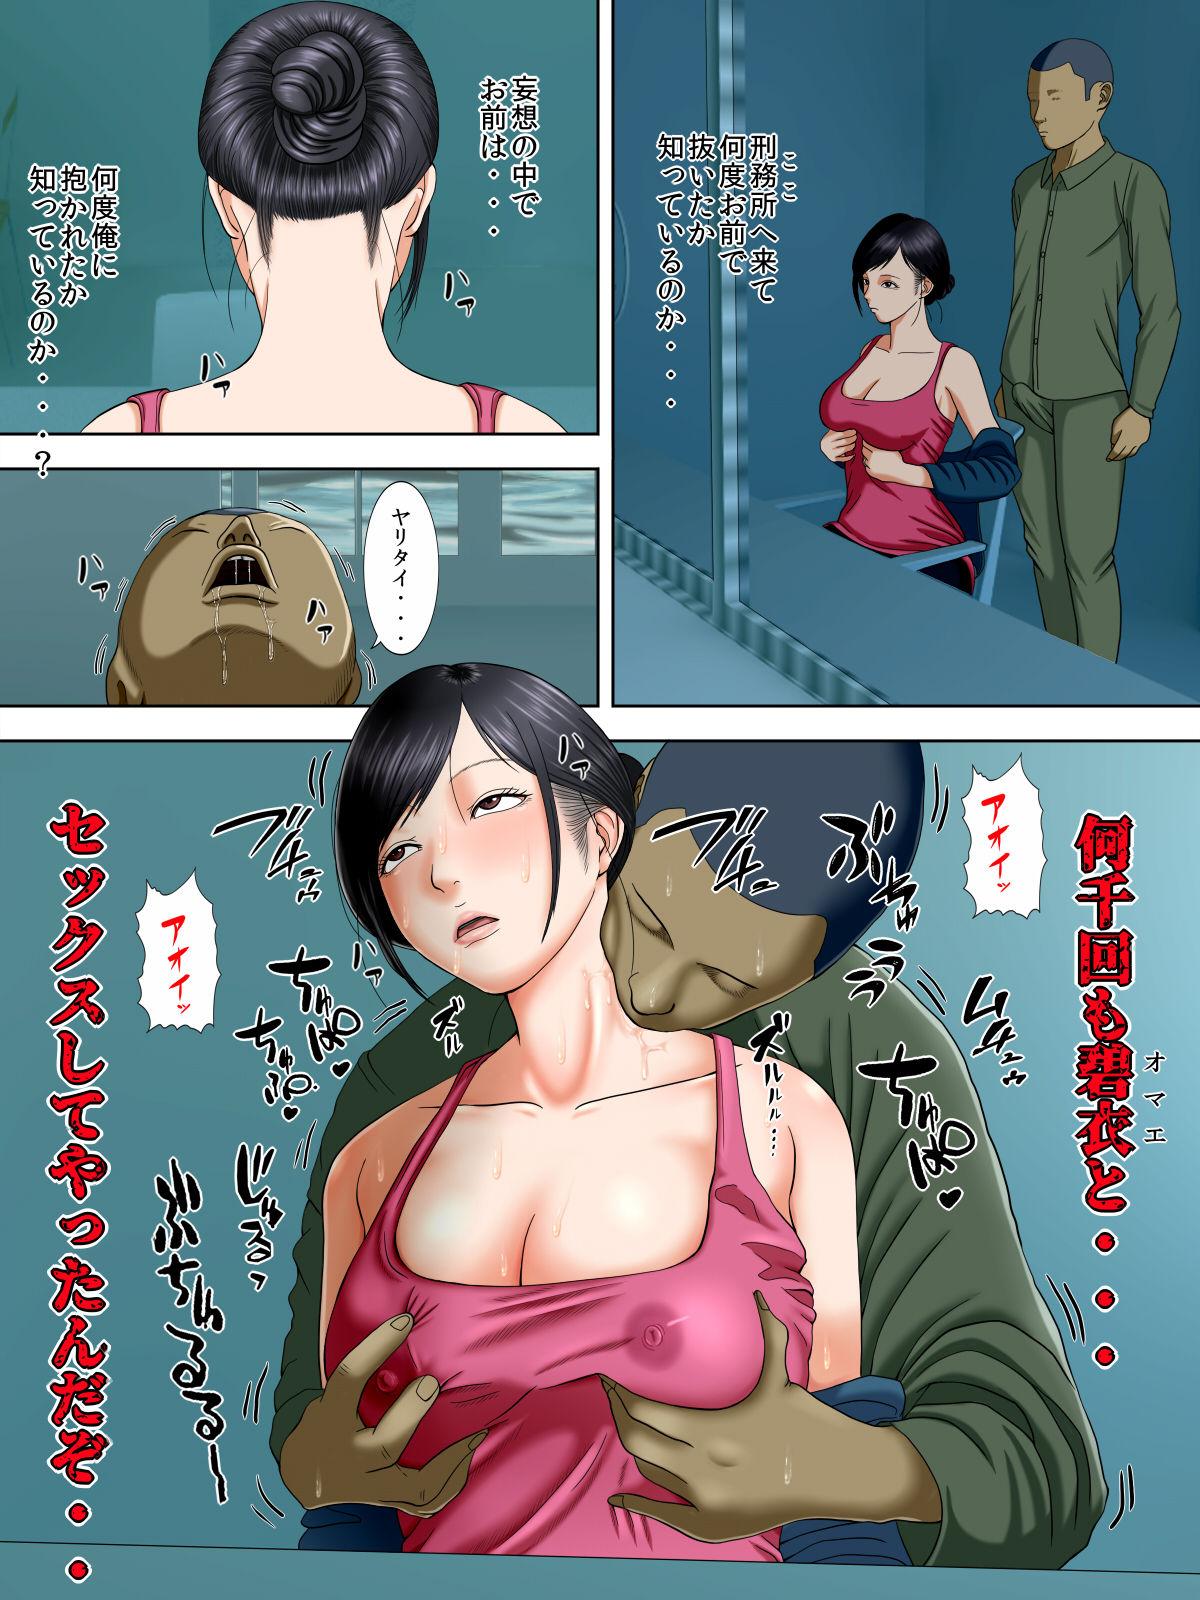 Rebolando Otto wa Gokuchuu, Ippou Tsuma wa... 2 - Original 19yo - Page 8